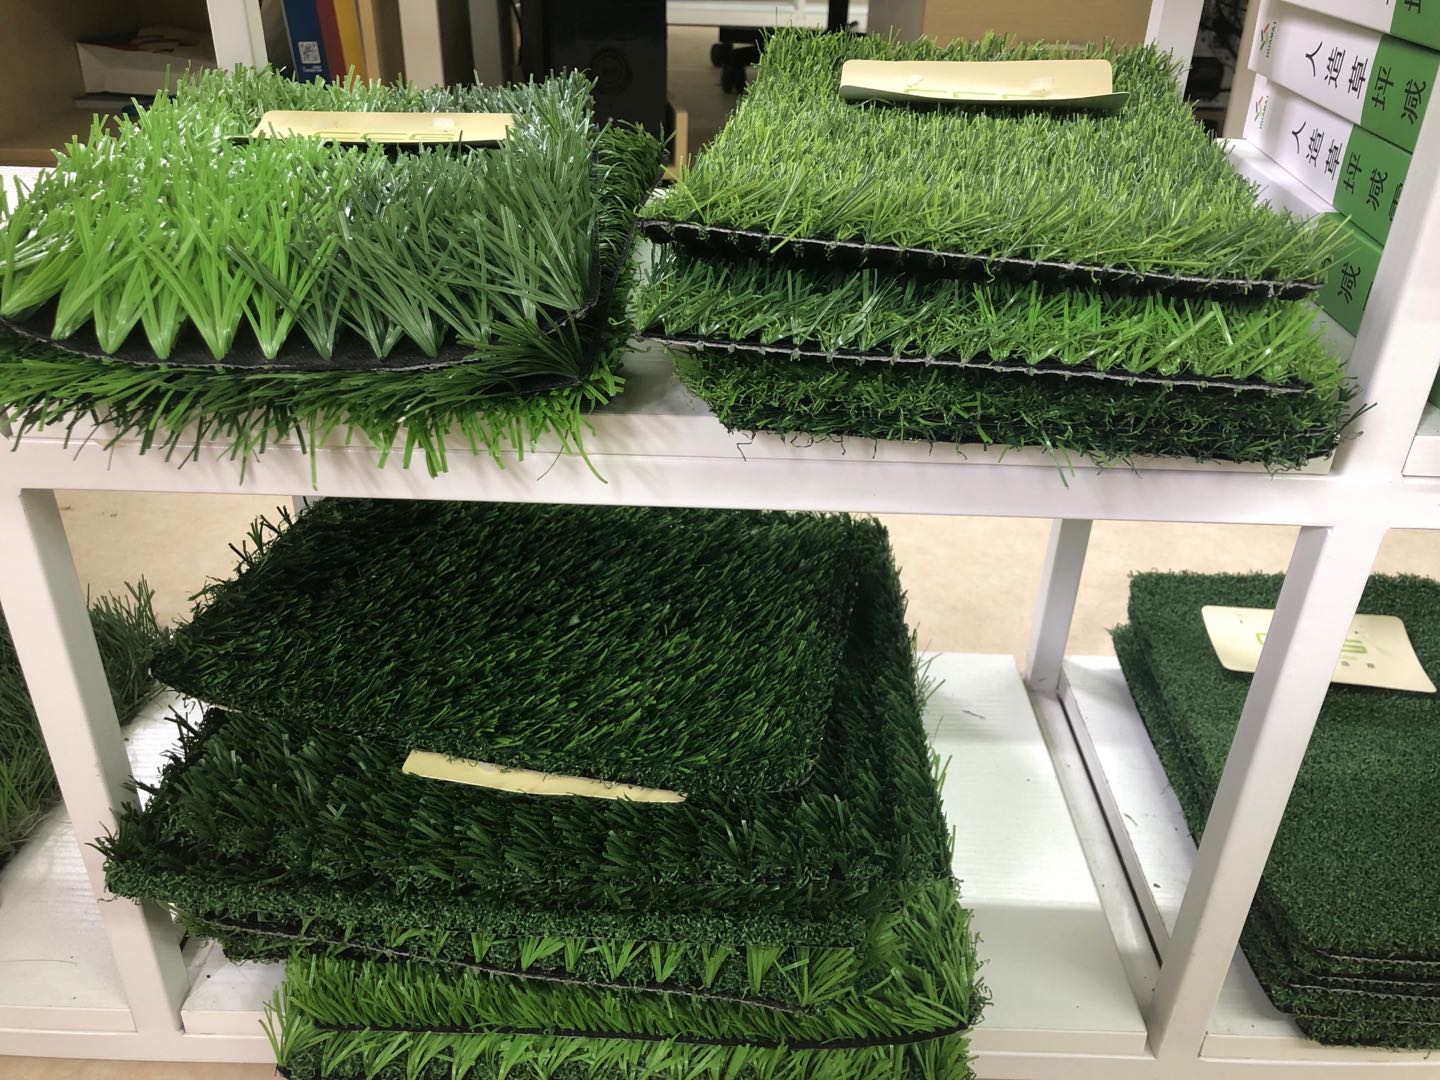 【广州人造草坪】广州人造草坪每平方米价格